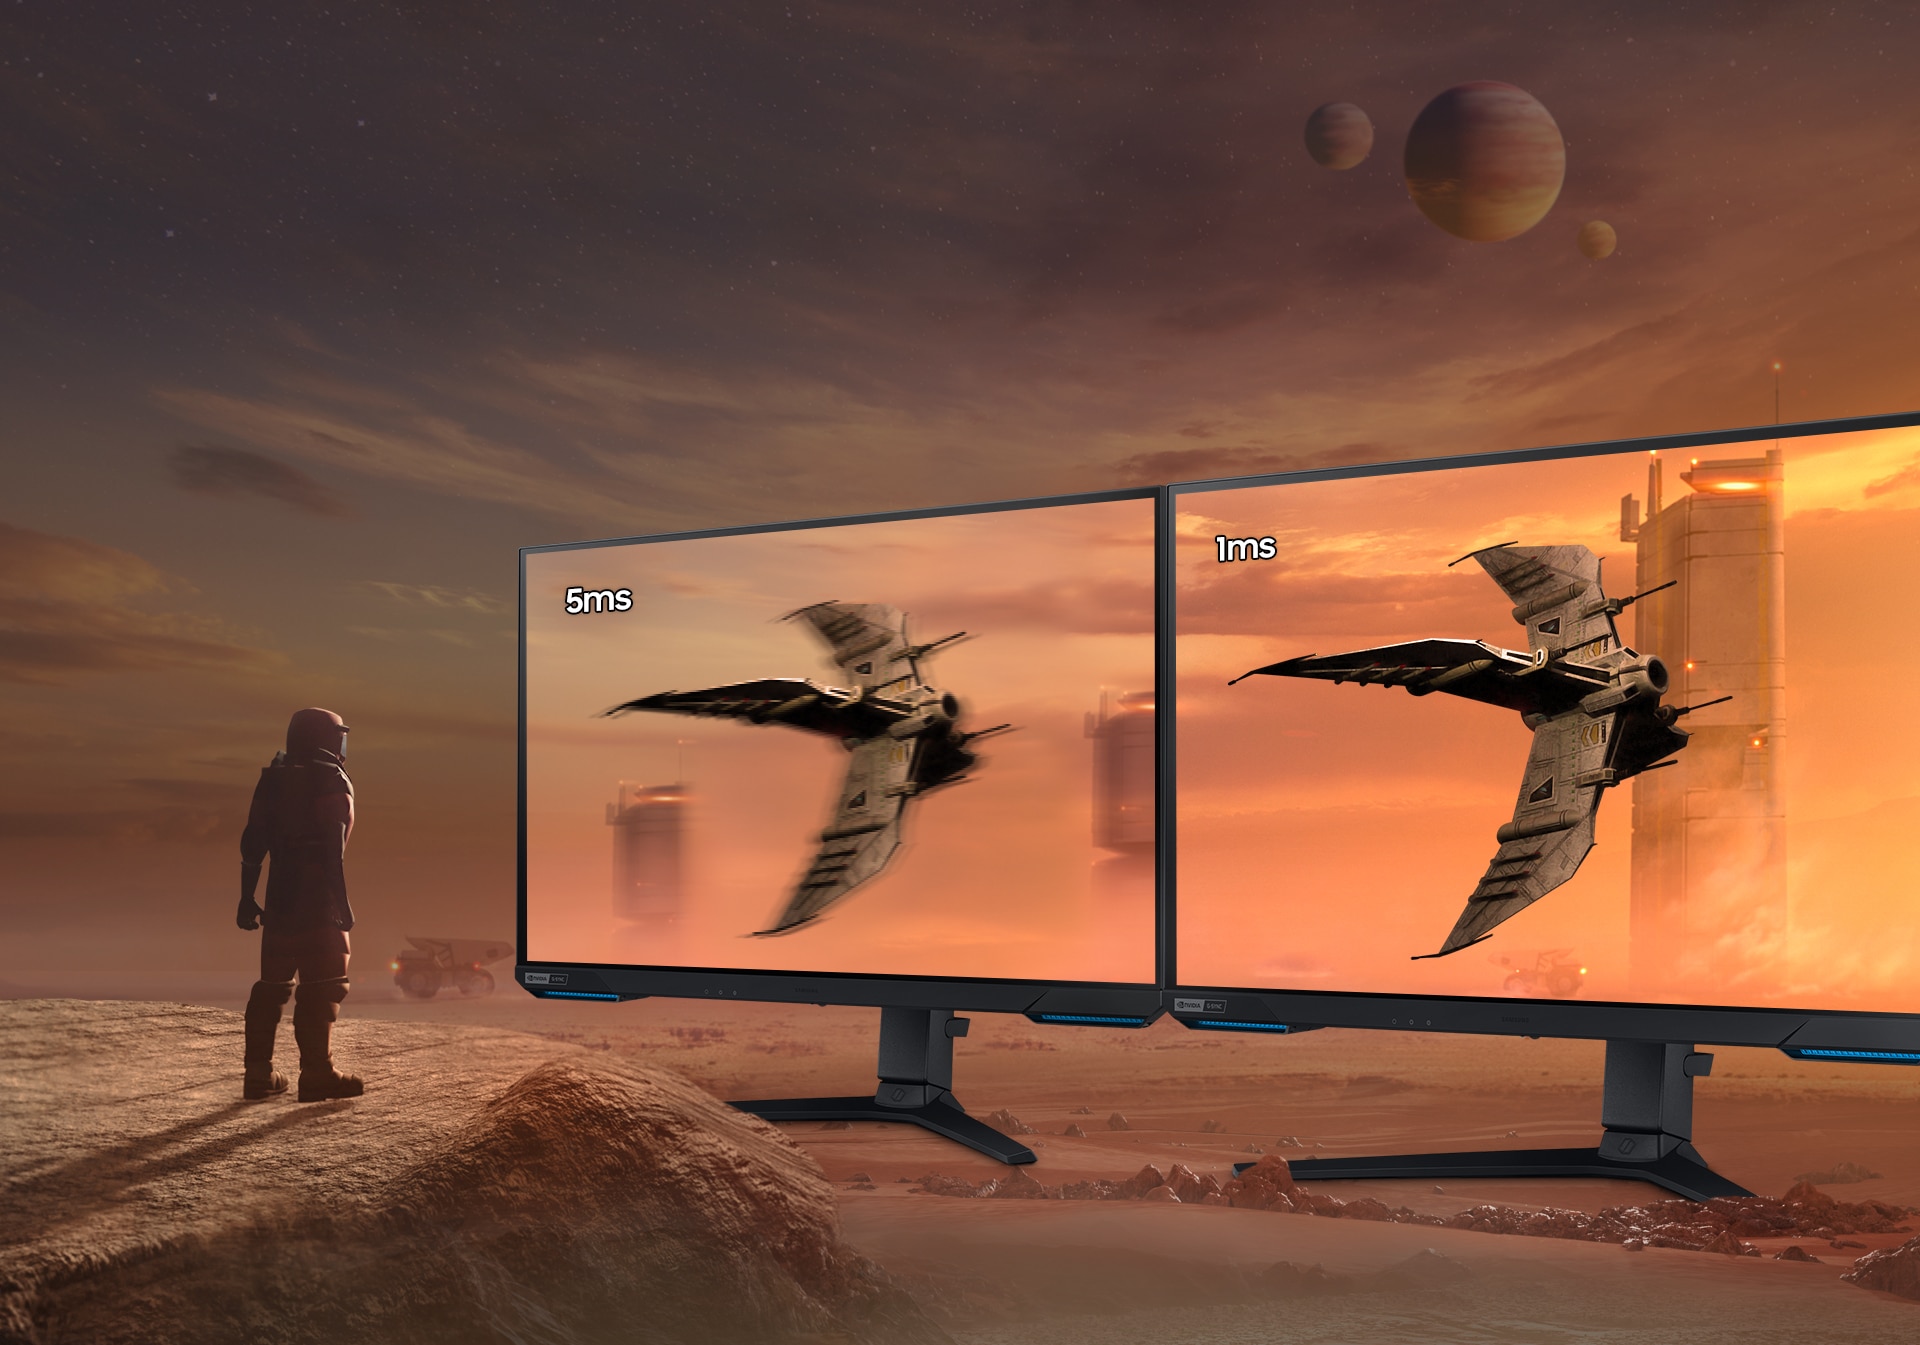 Một nhà thám hiểm du hành vũ trụ xuất hiện trên một vách đá trên một hành tinh sa mạc màu cam và xám. Bên phải của họ là hai màn hình G70A cho thấy cùng một con tàu vũ trụ bay qua các tòa nhà không cửa sổ. Màn hình bên trái bị mờ và có dòng chữ 5ms phía trên trong khi màn hình bên phải hiển thị mịn và hiển thị dòng chữ 1ms phía trên.